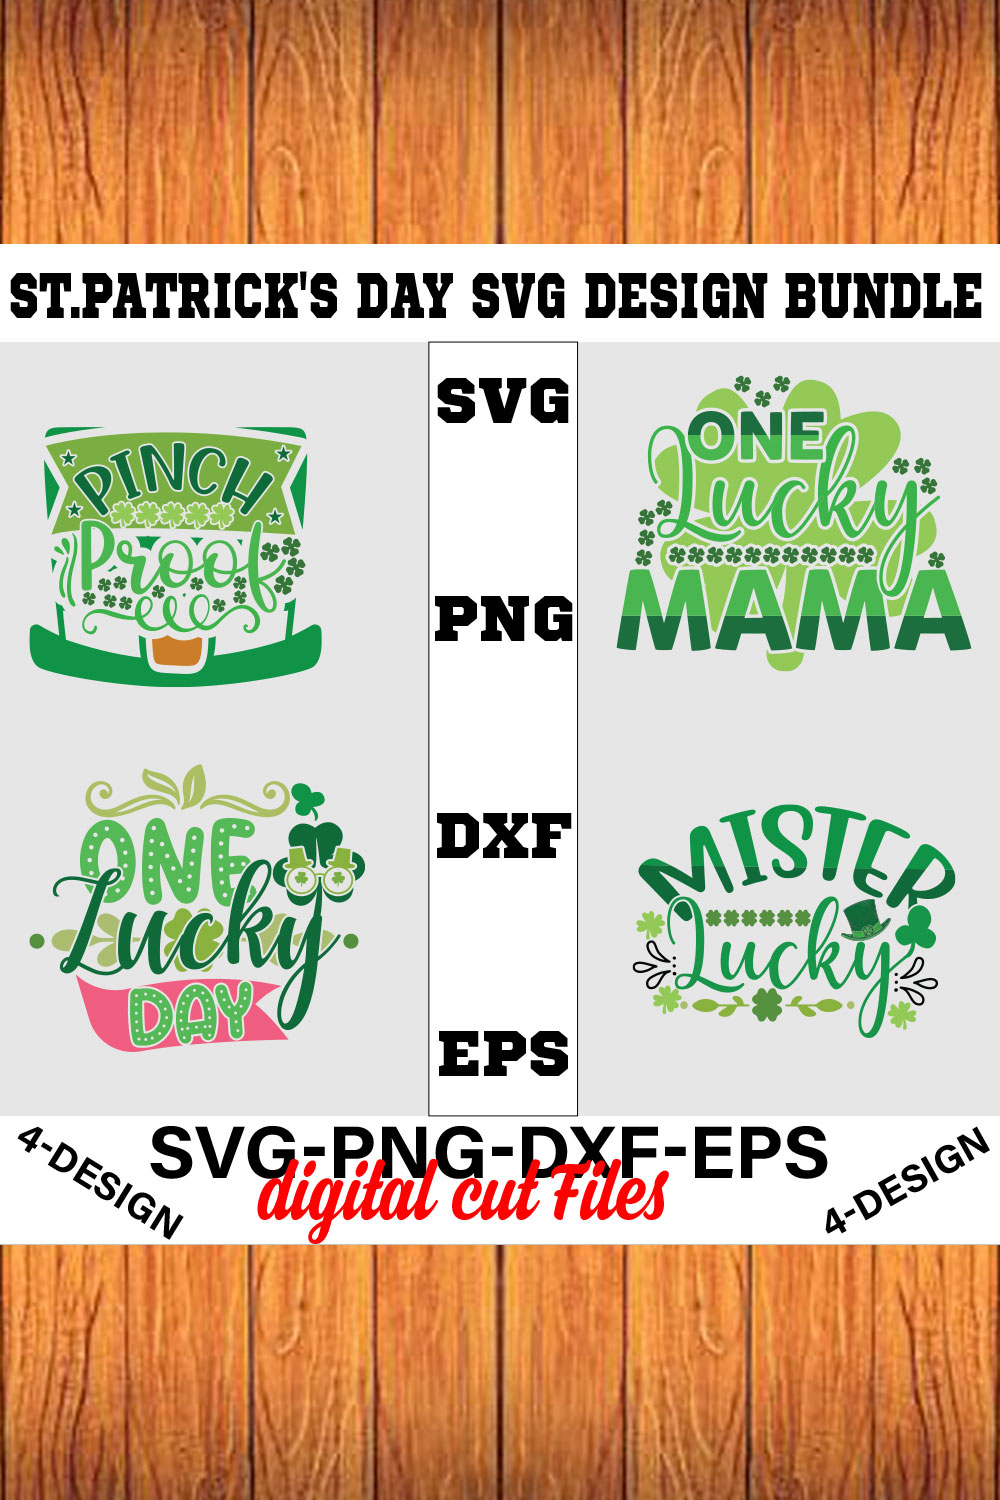 Stpatrick's Day Svg Design Bundle Vol-05 pinterest preview image.